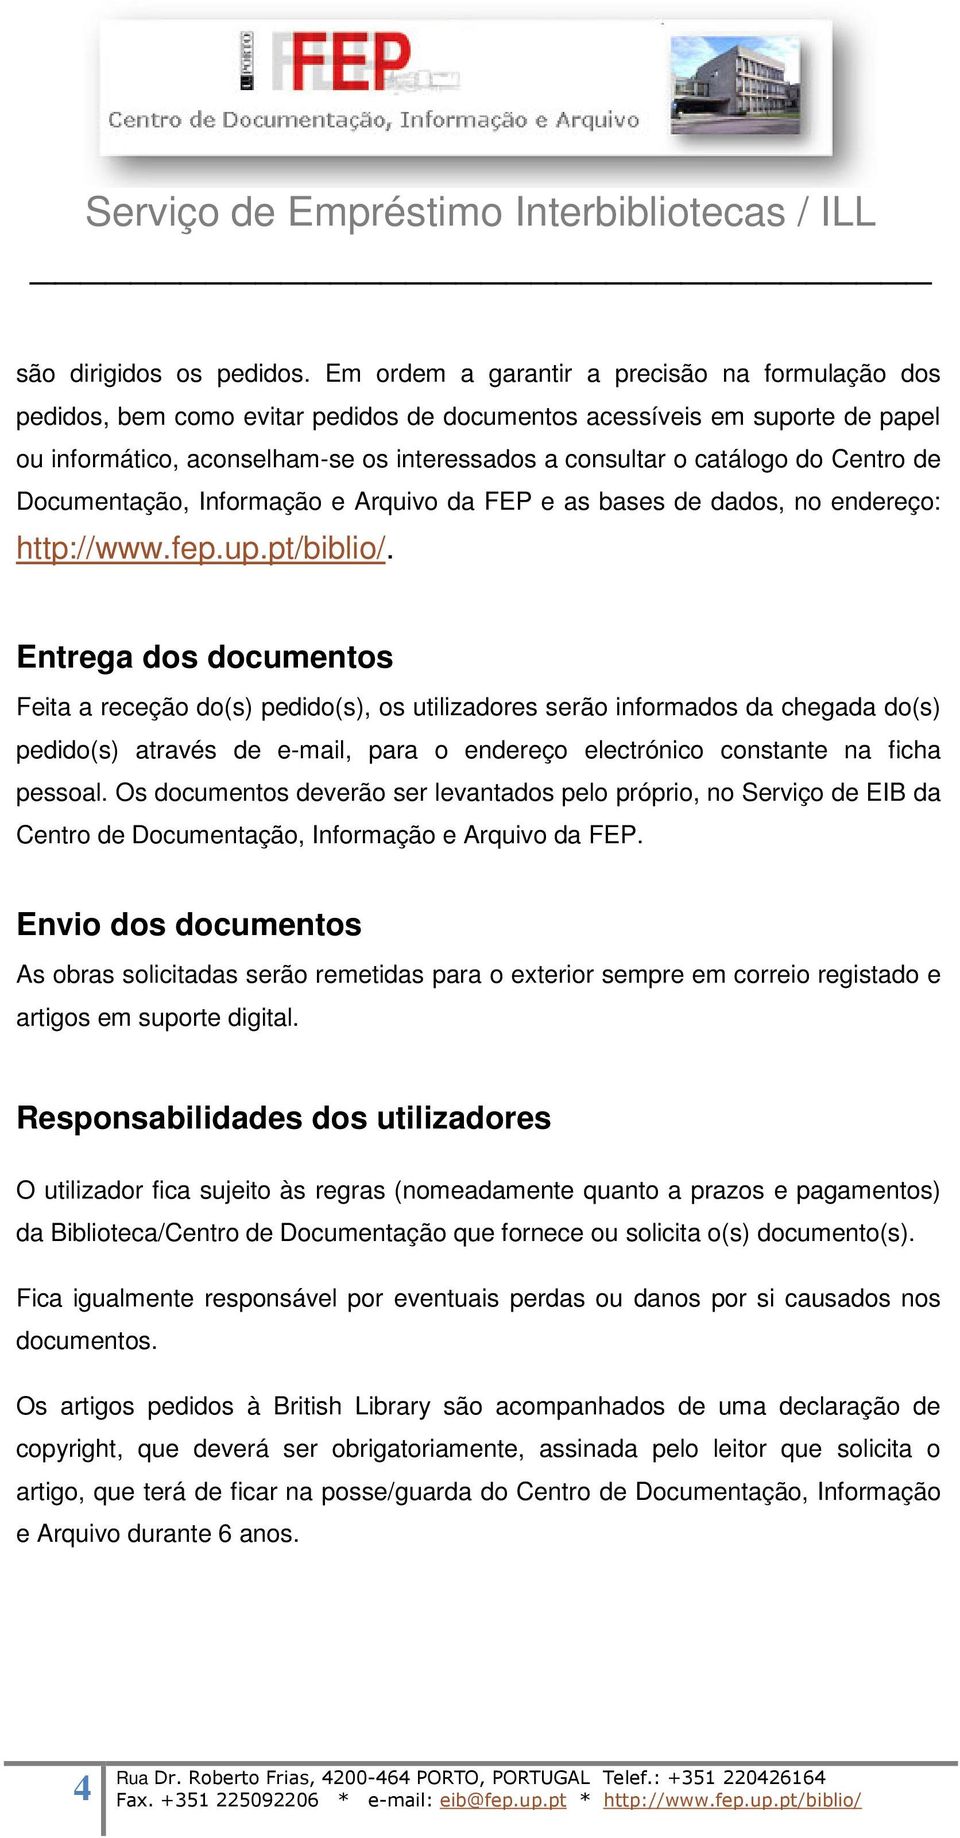 Centro de Documentação, Informação e Arquivo da FEP e as bases de dados, no endereço: http://www.fep.up.pt/biblio/.